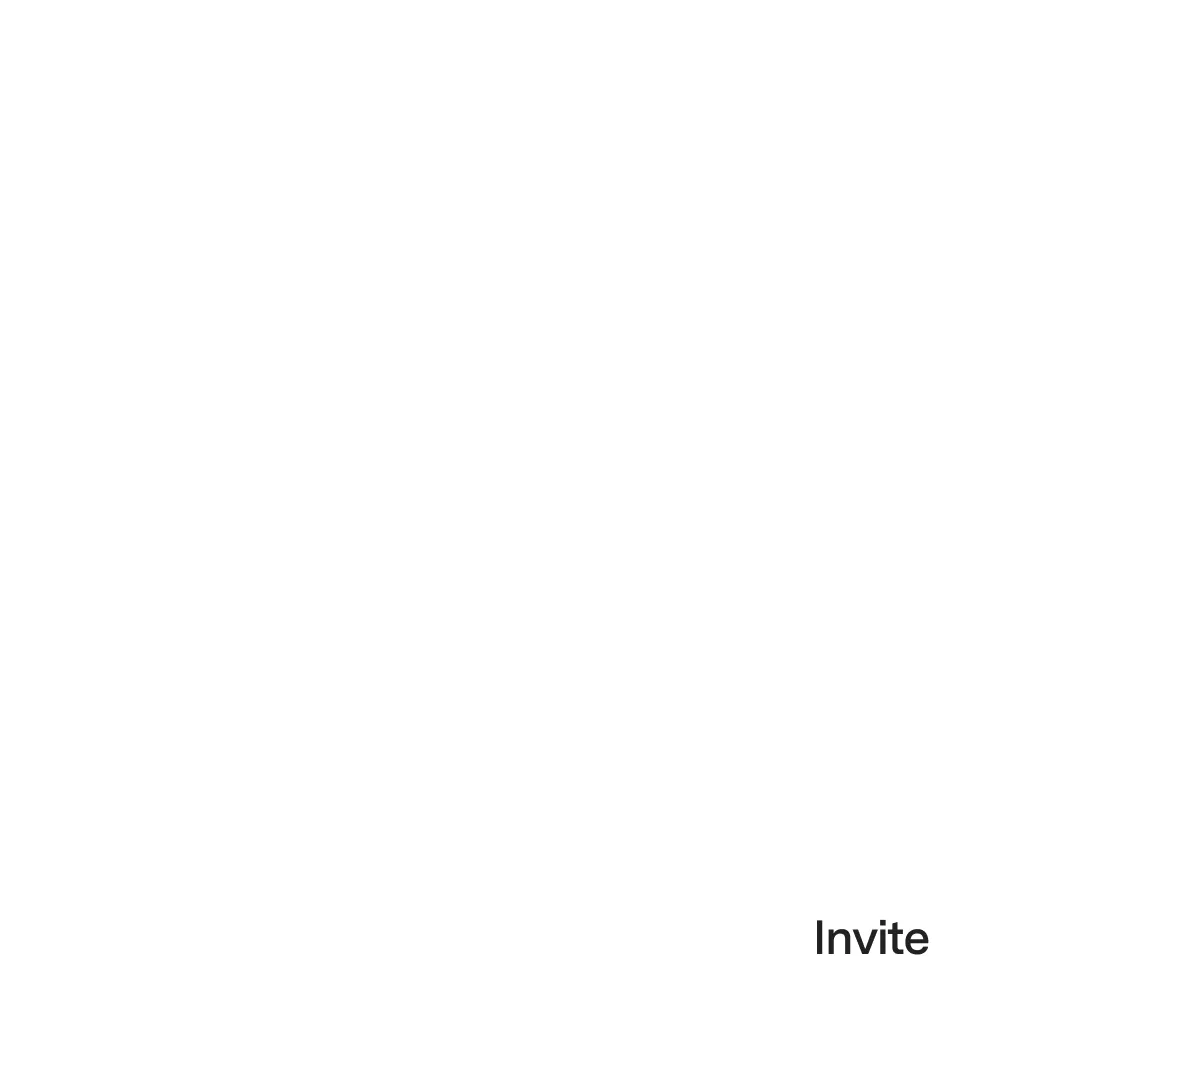 Invite modal